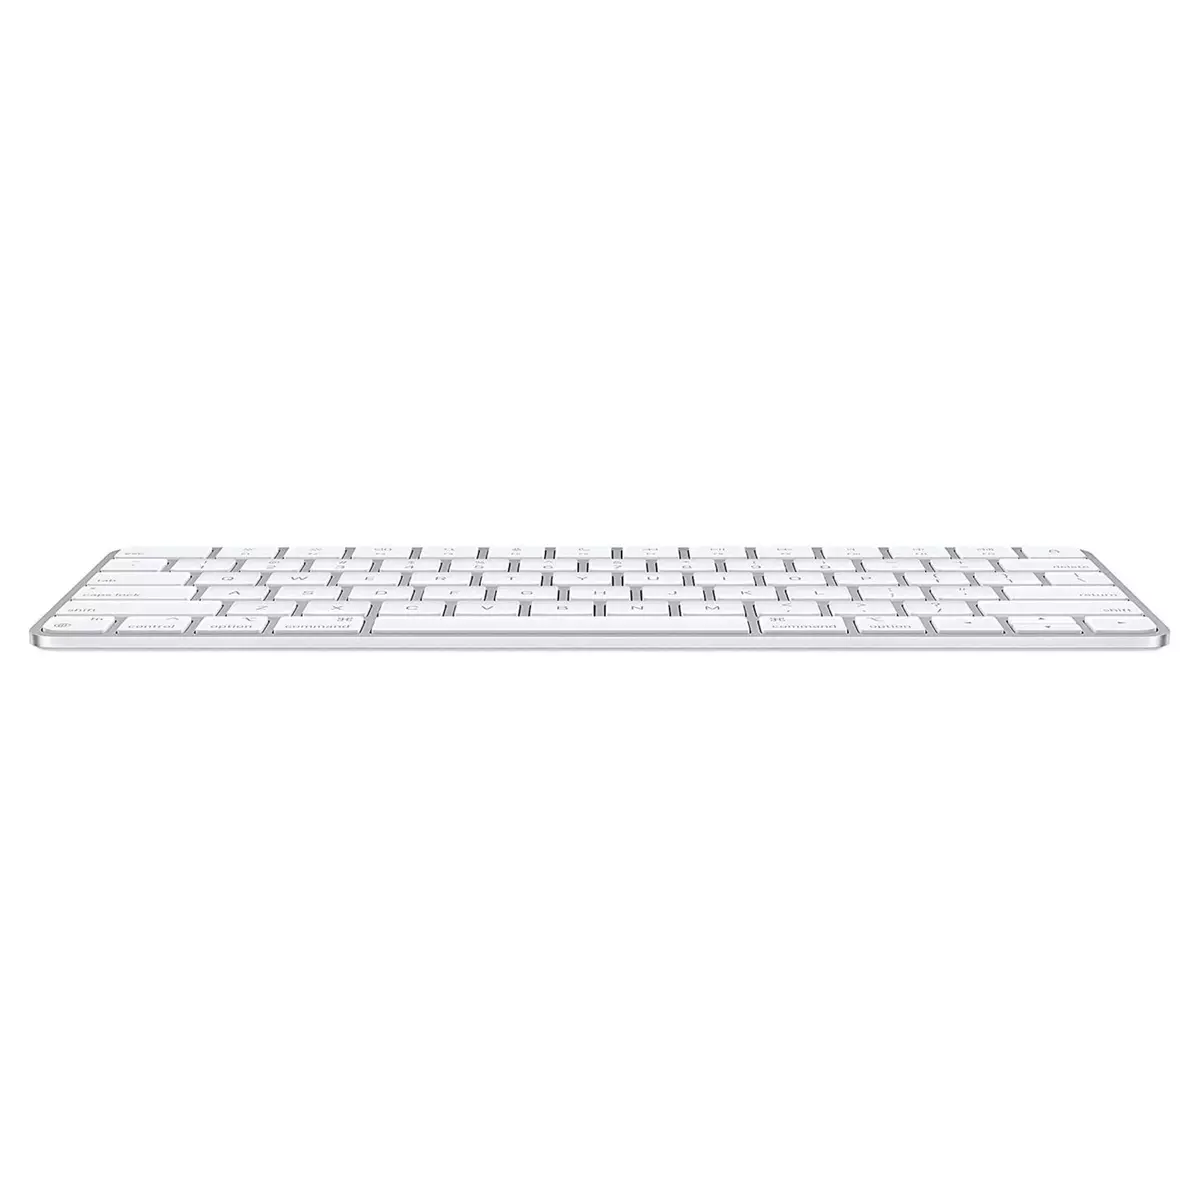 Clavier Apple Magic Keyboard AZERTY - Clavier - Apple